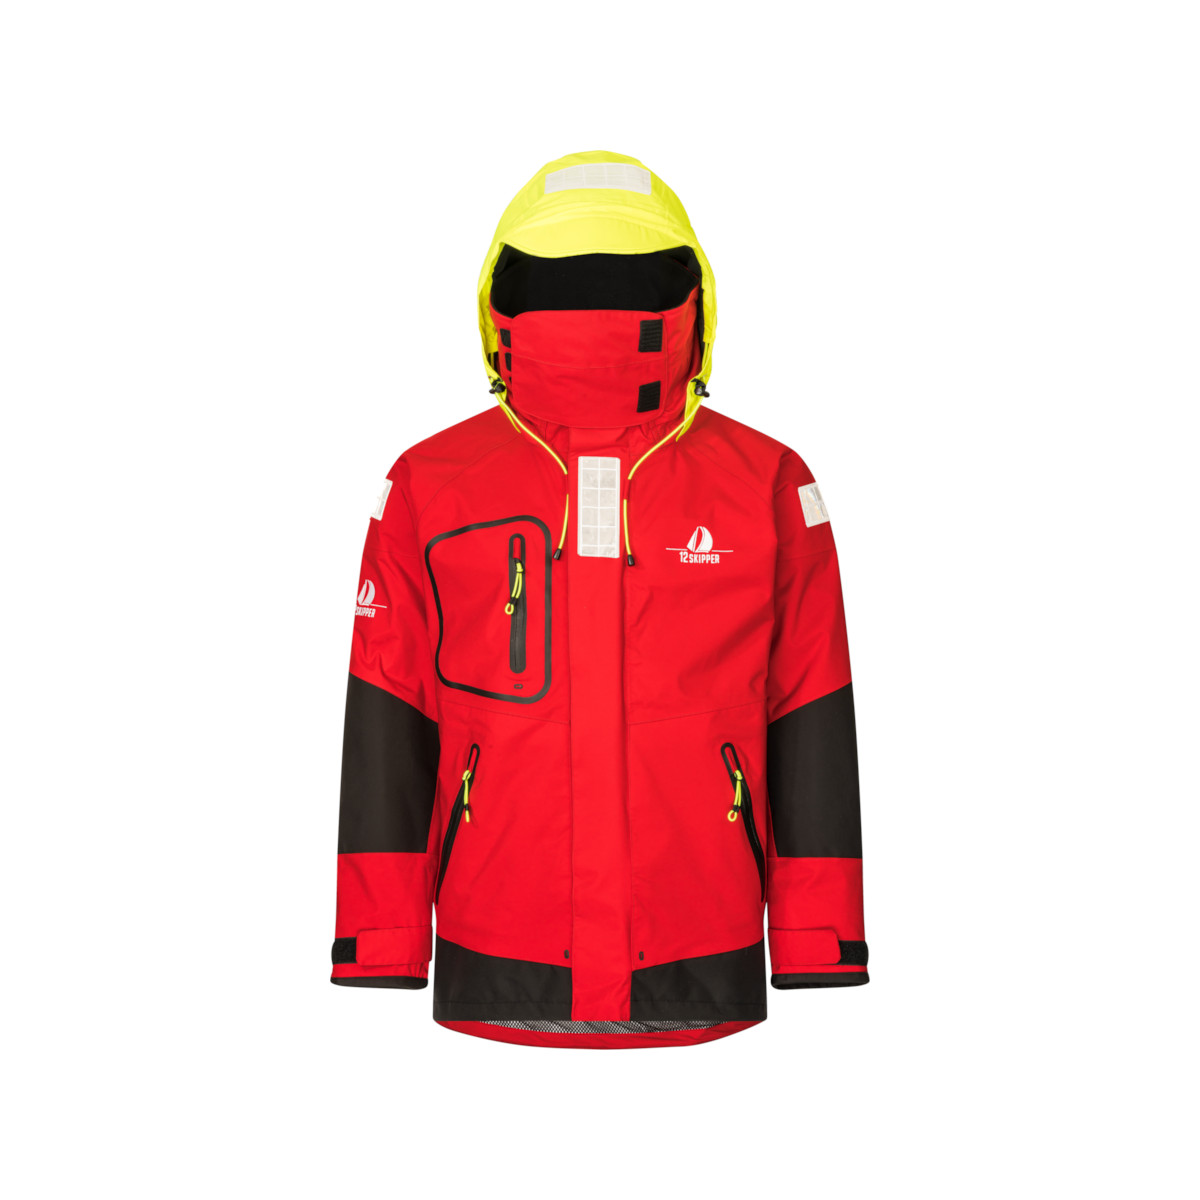 12skipper Magellan veste de quart hauturière, unisexe - rouge, taille S